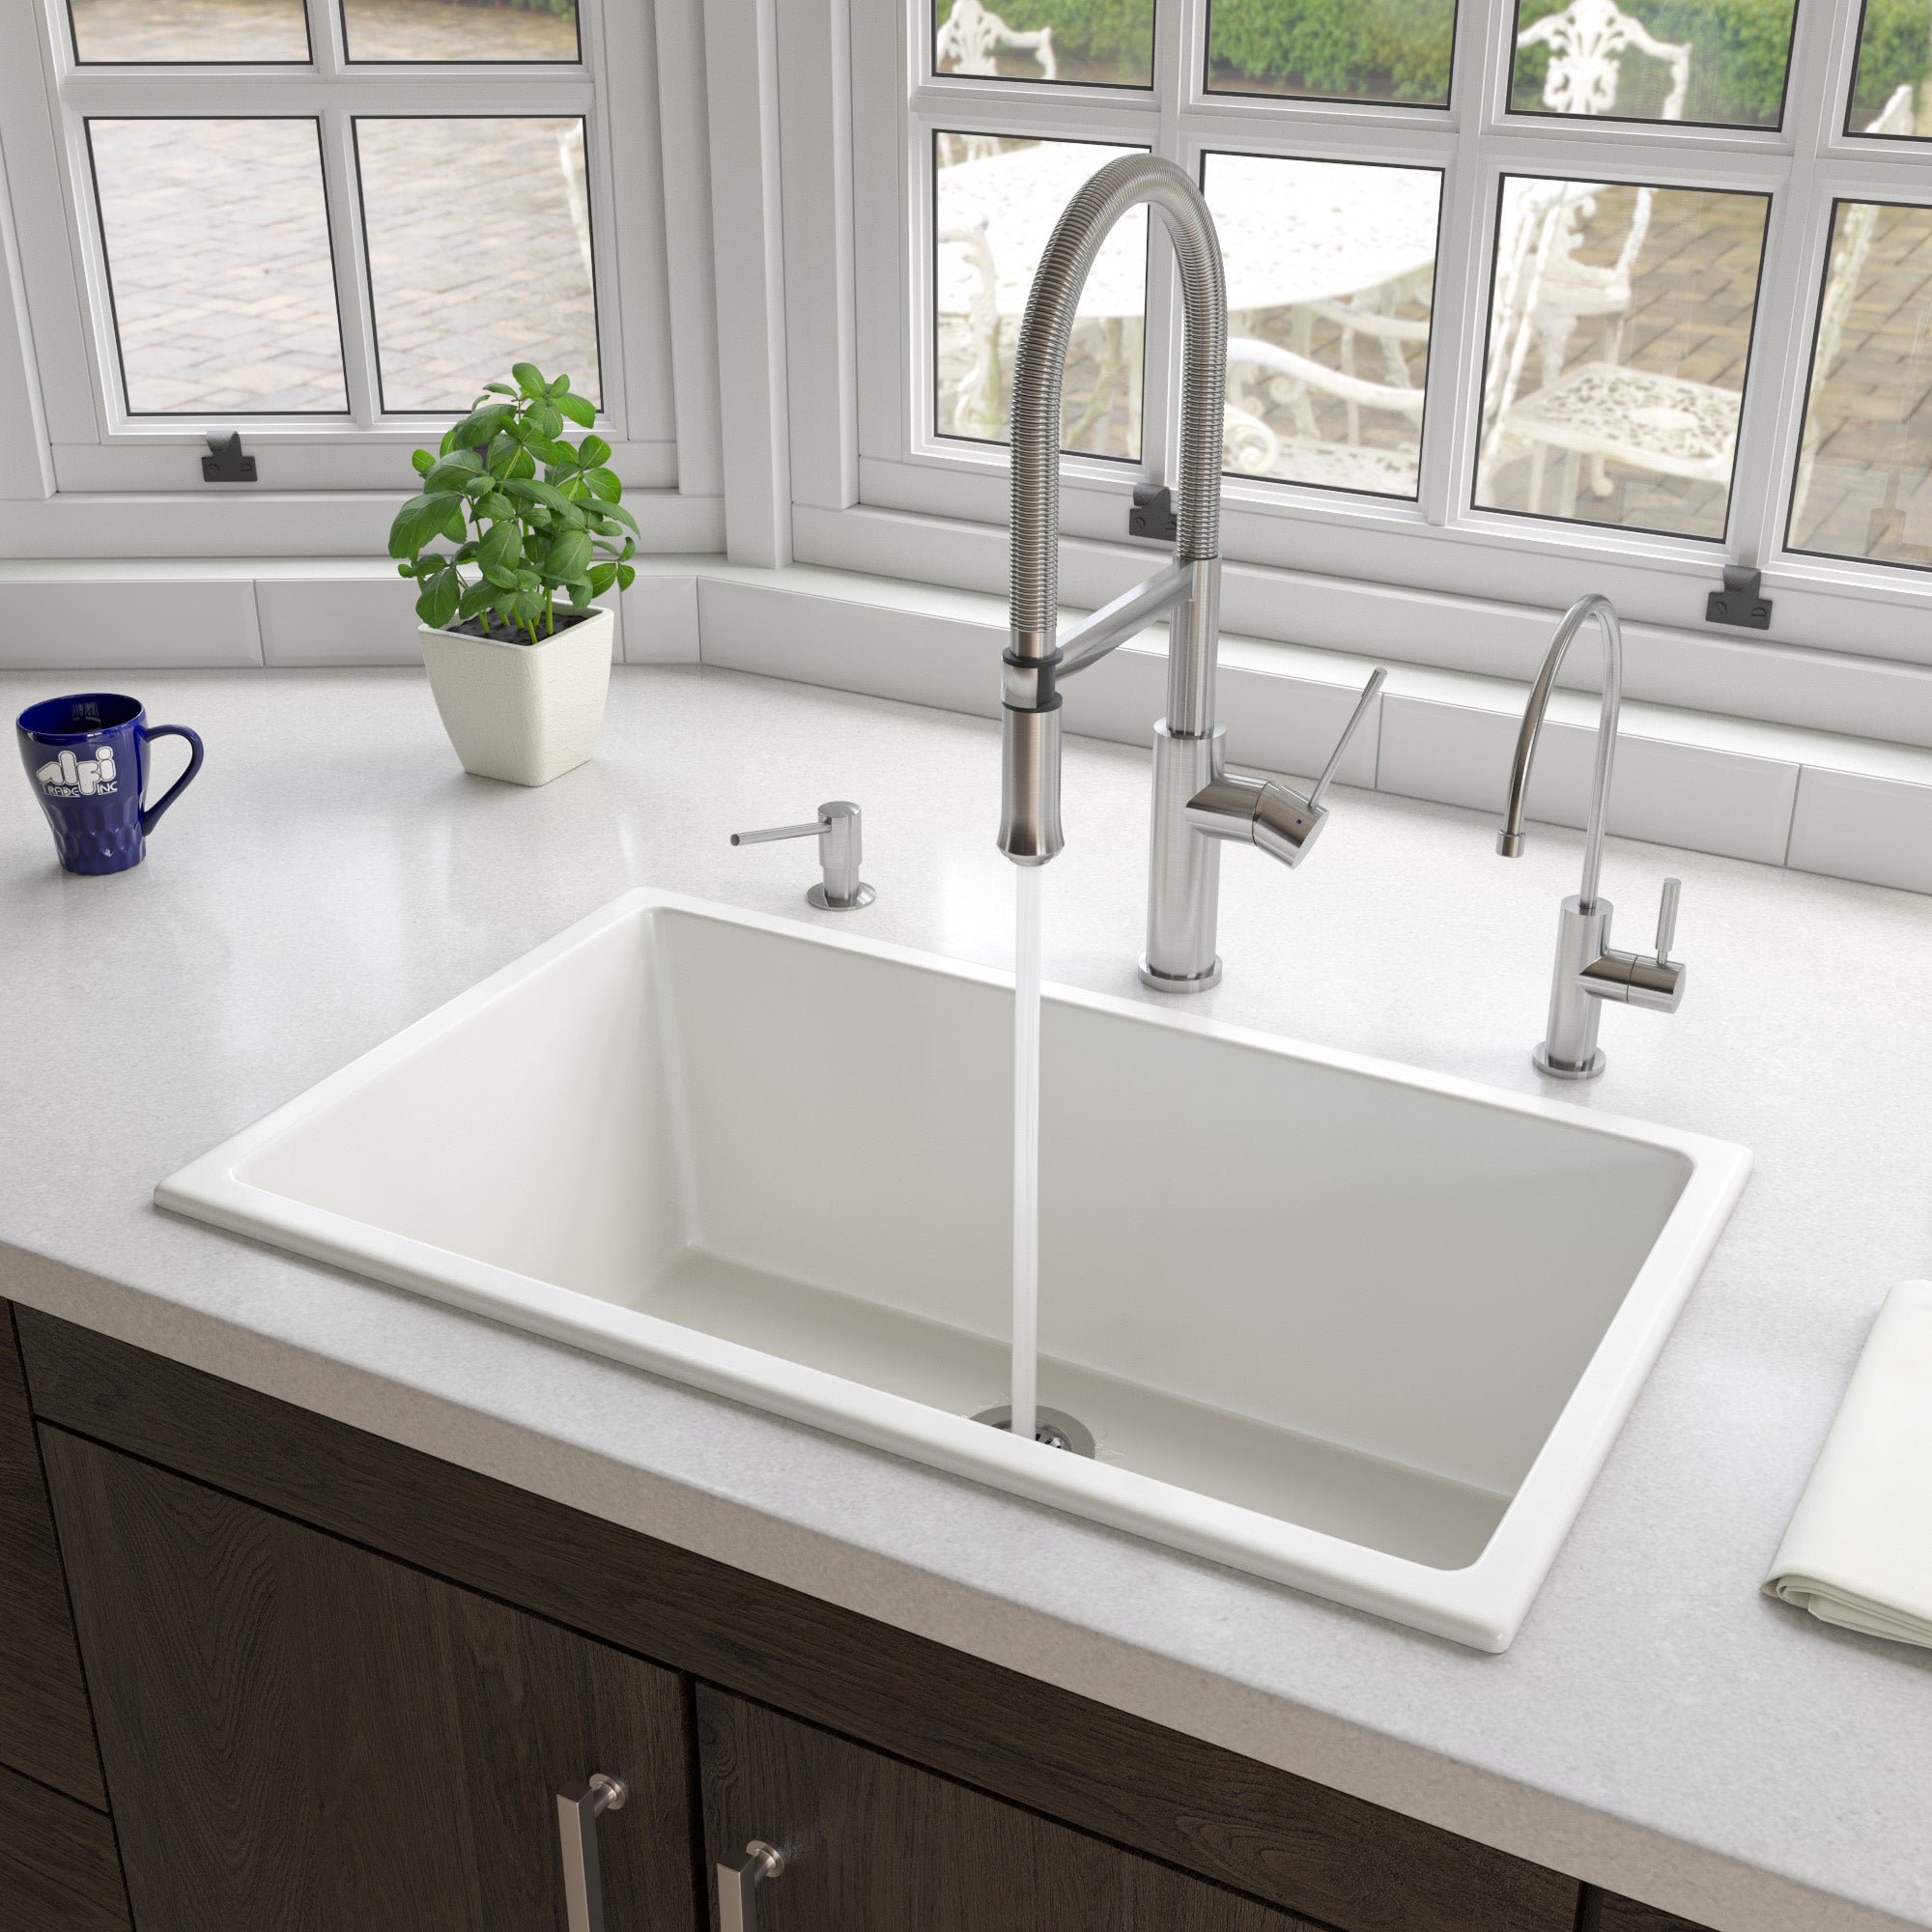 ALFI brand 30" Fireclay Undermount Kitchen Sink, White, AB3018UD-W